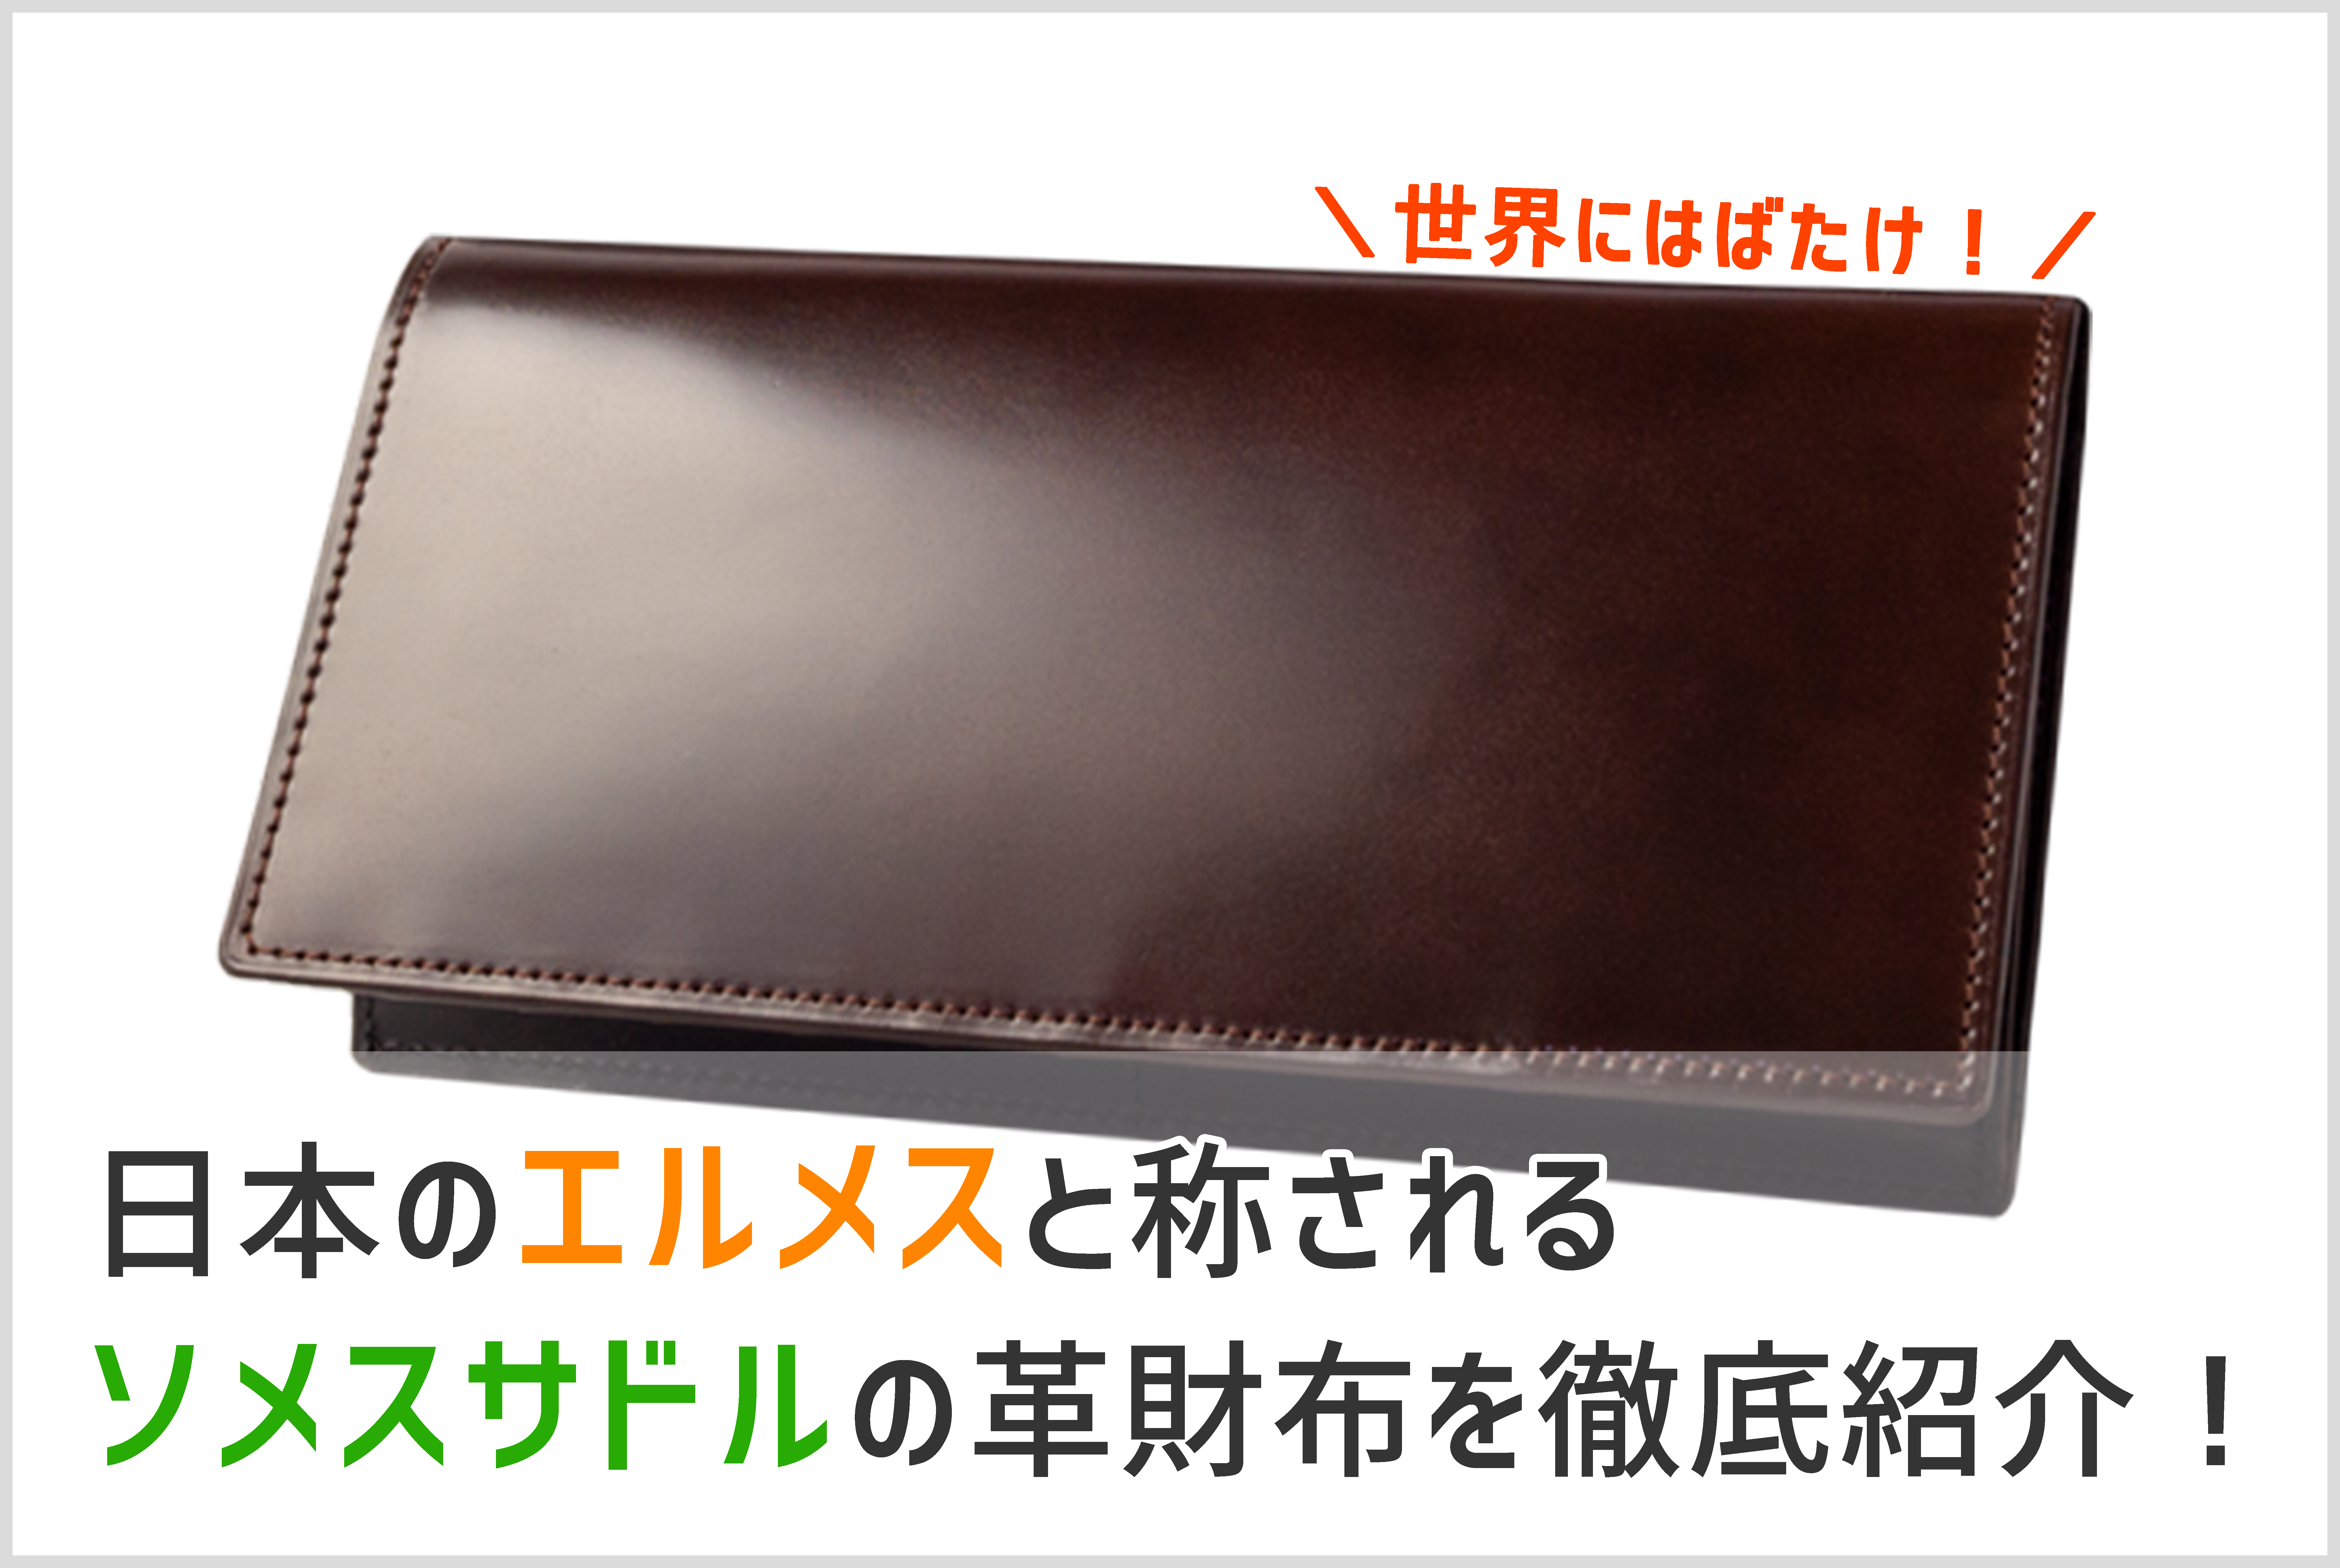 日本が認めた革工房 ソメスサドルの革財布と店舗を徹底紹介 レザーハック